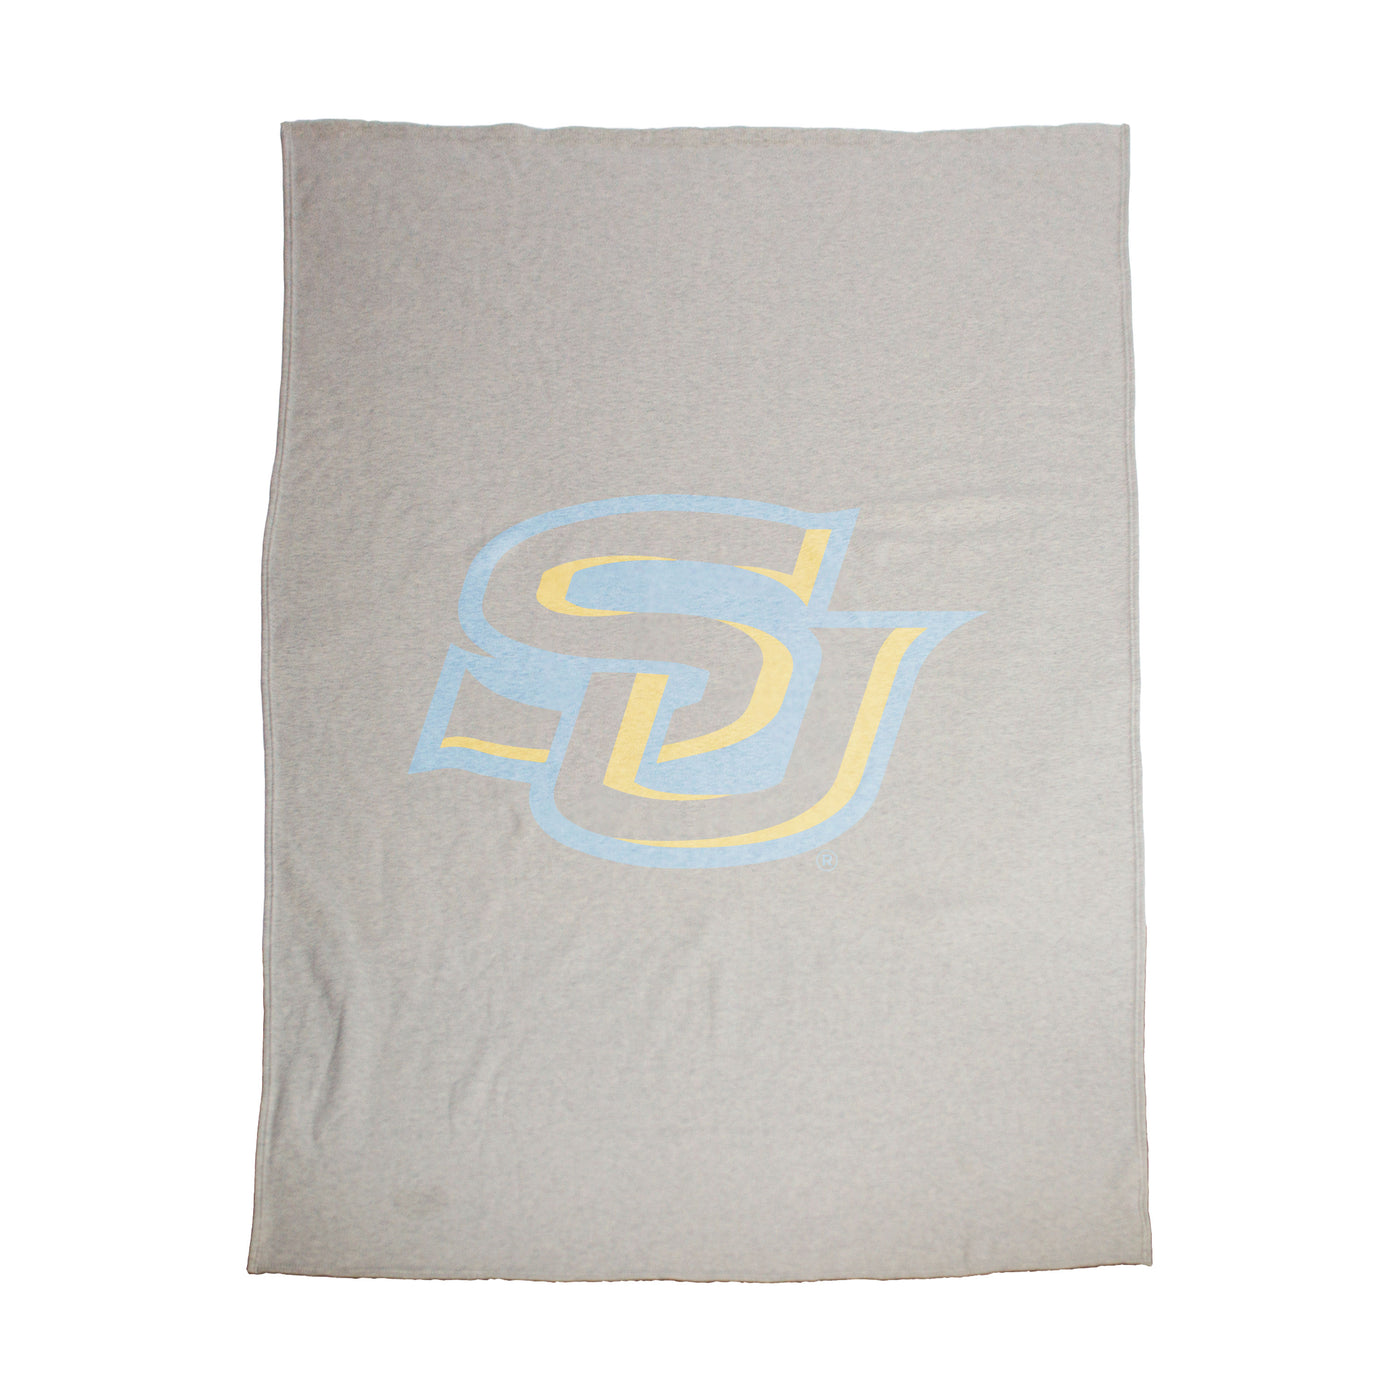 Southern University Oversized Logo Sublimated Sweatshirt Blanket